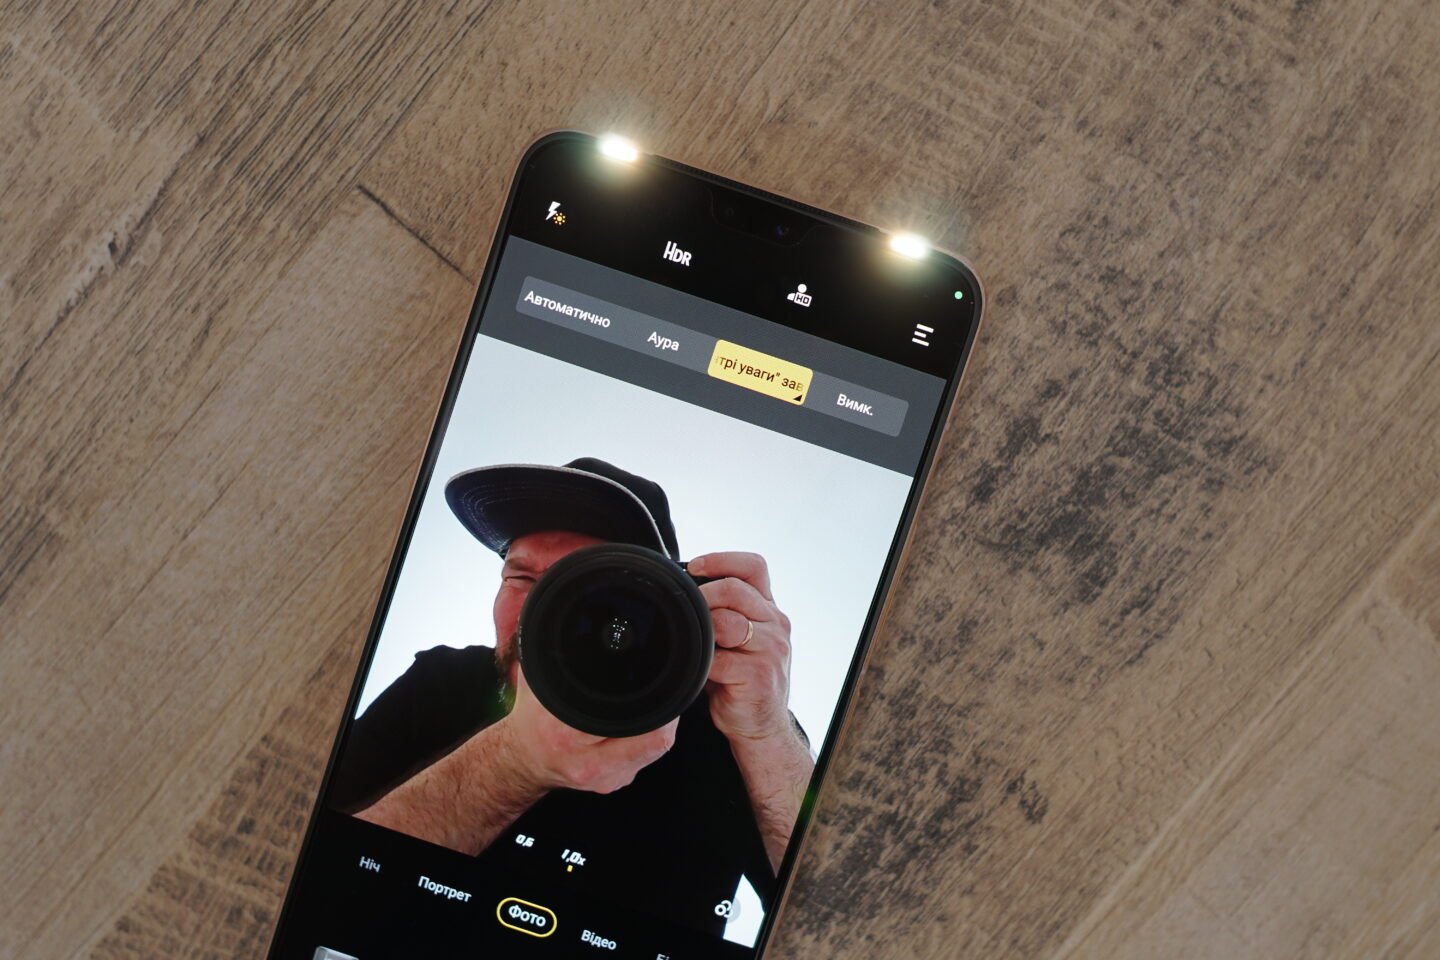 Vivo V23: smartphone with dual selfie camera